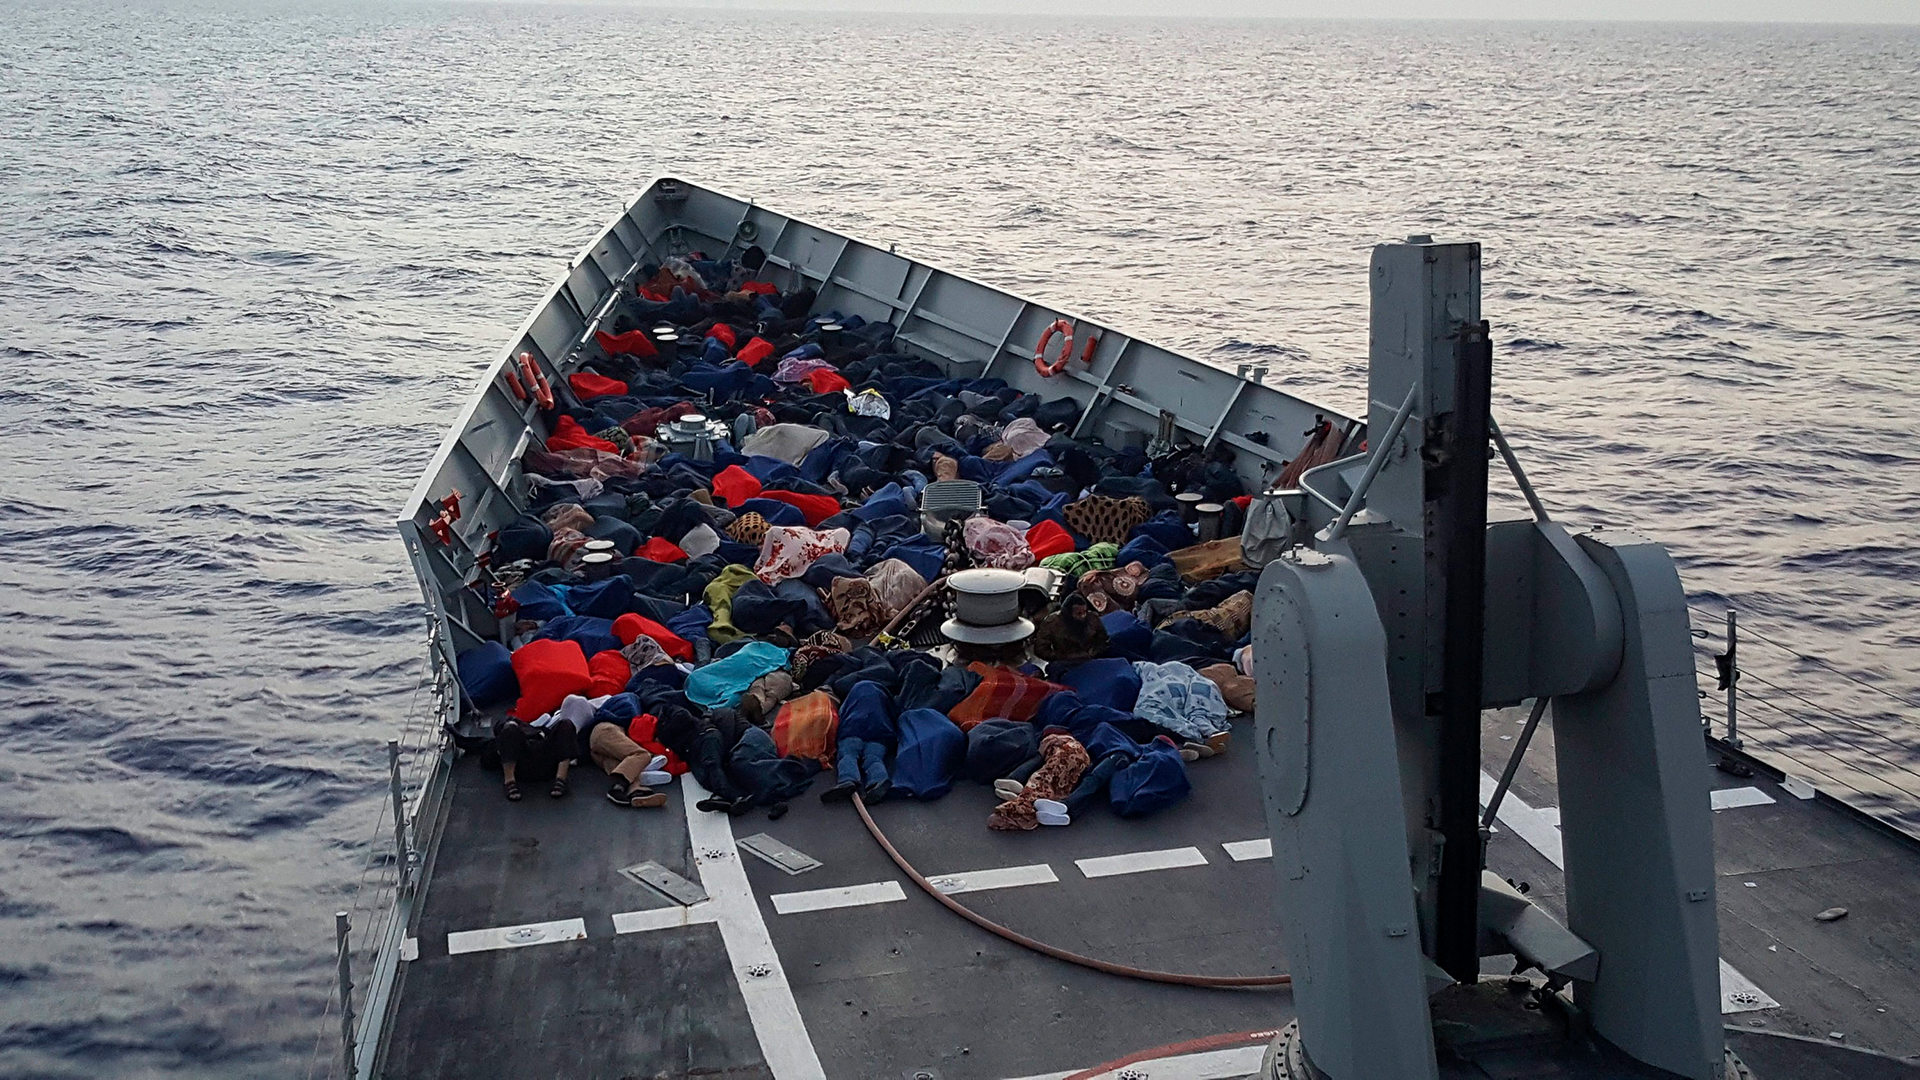 Migranten, die von der spanischen Fregatte "Reina Sofia" (Königin Sofia) auf See vor der italienischen Küsten gerettet wurden, während der Operation "Sophia", einer Mission der Marine der Europäischen Union | dpa